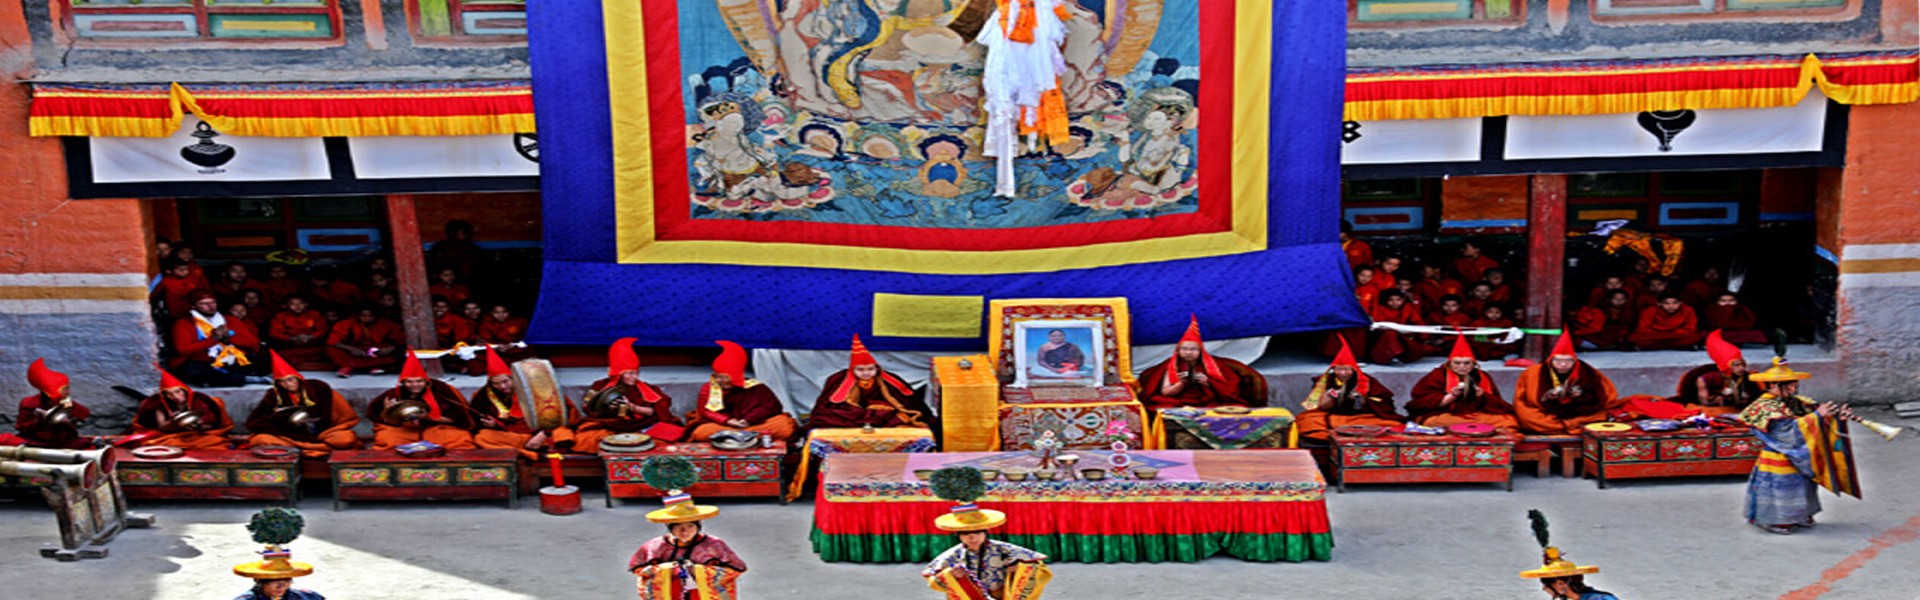 Bhutan Druk path trek